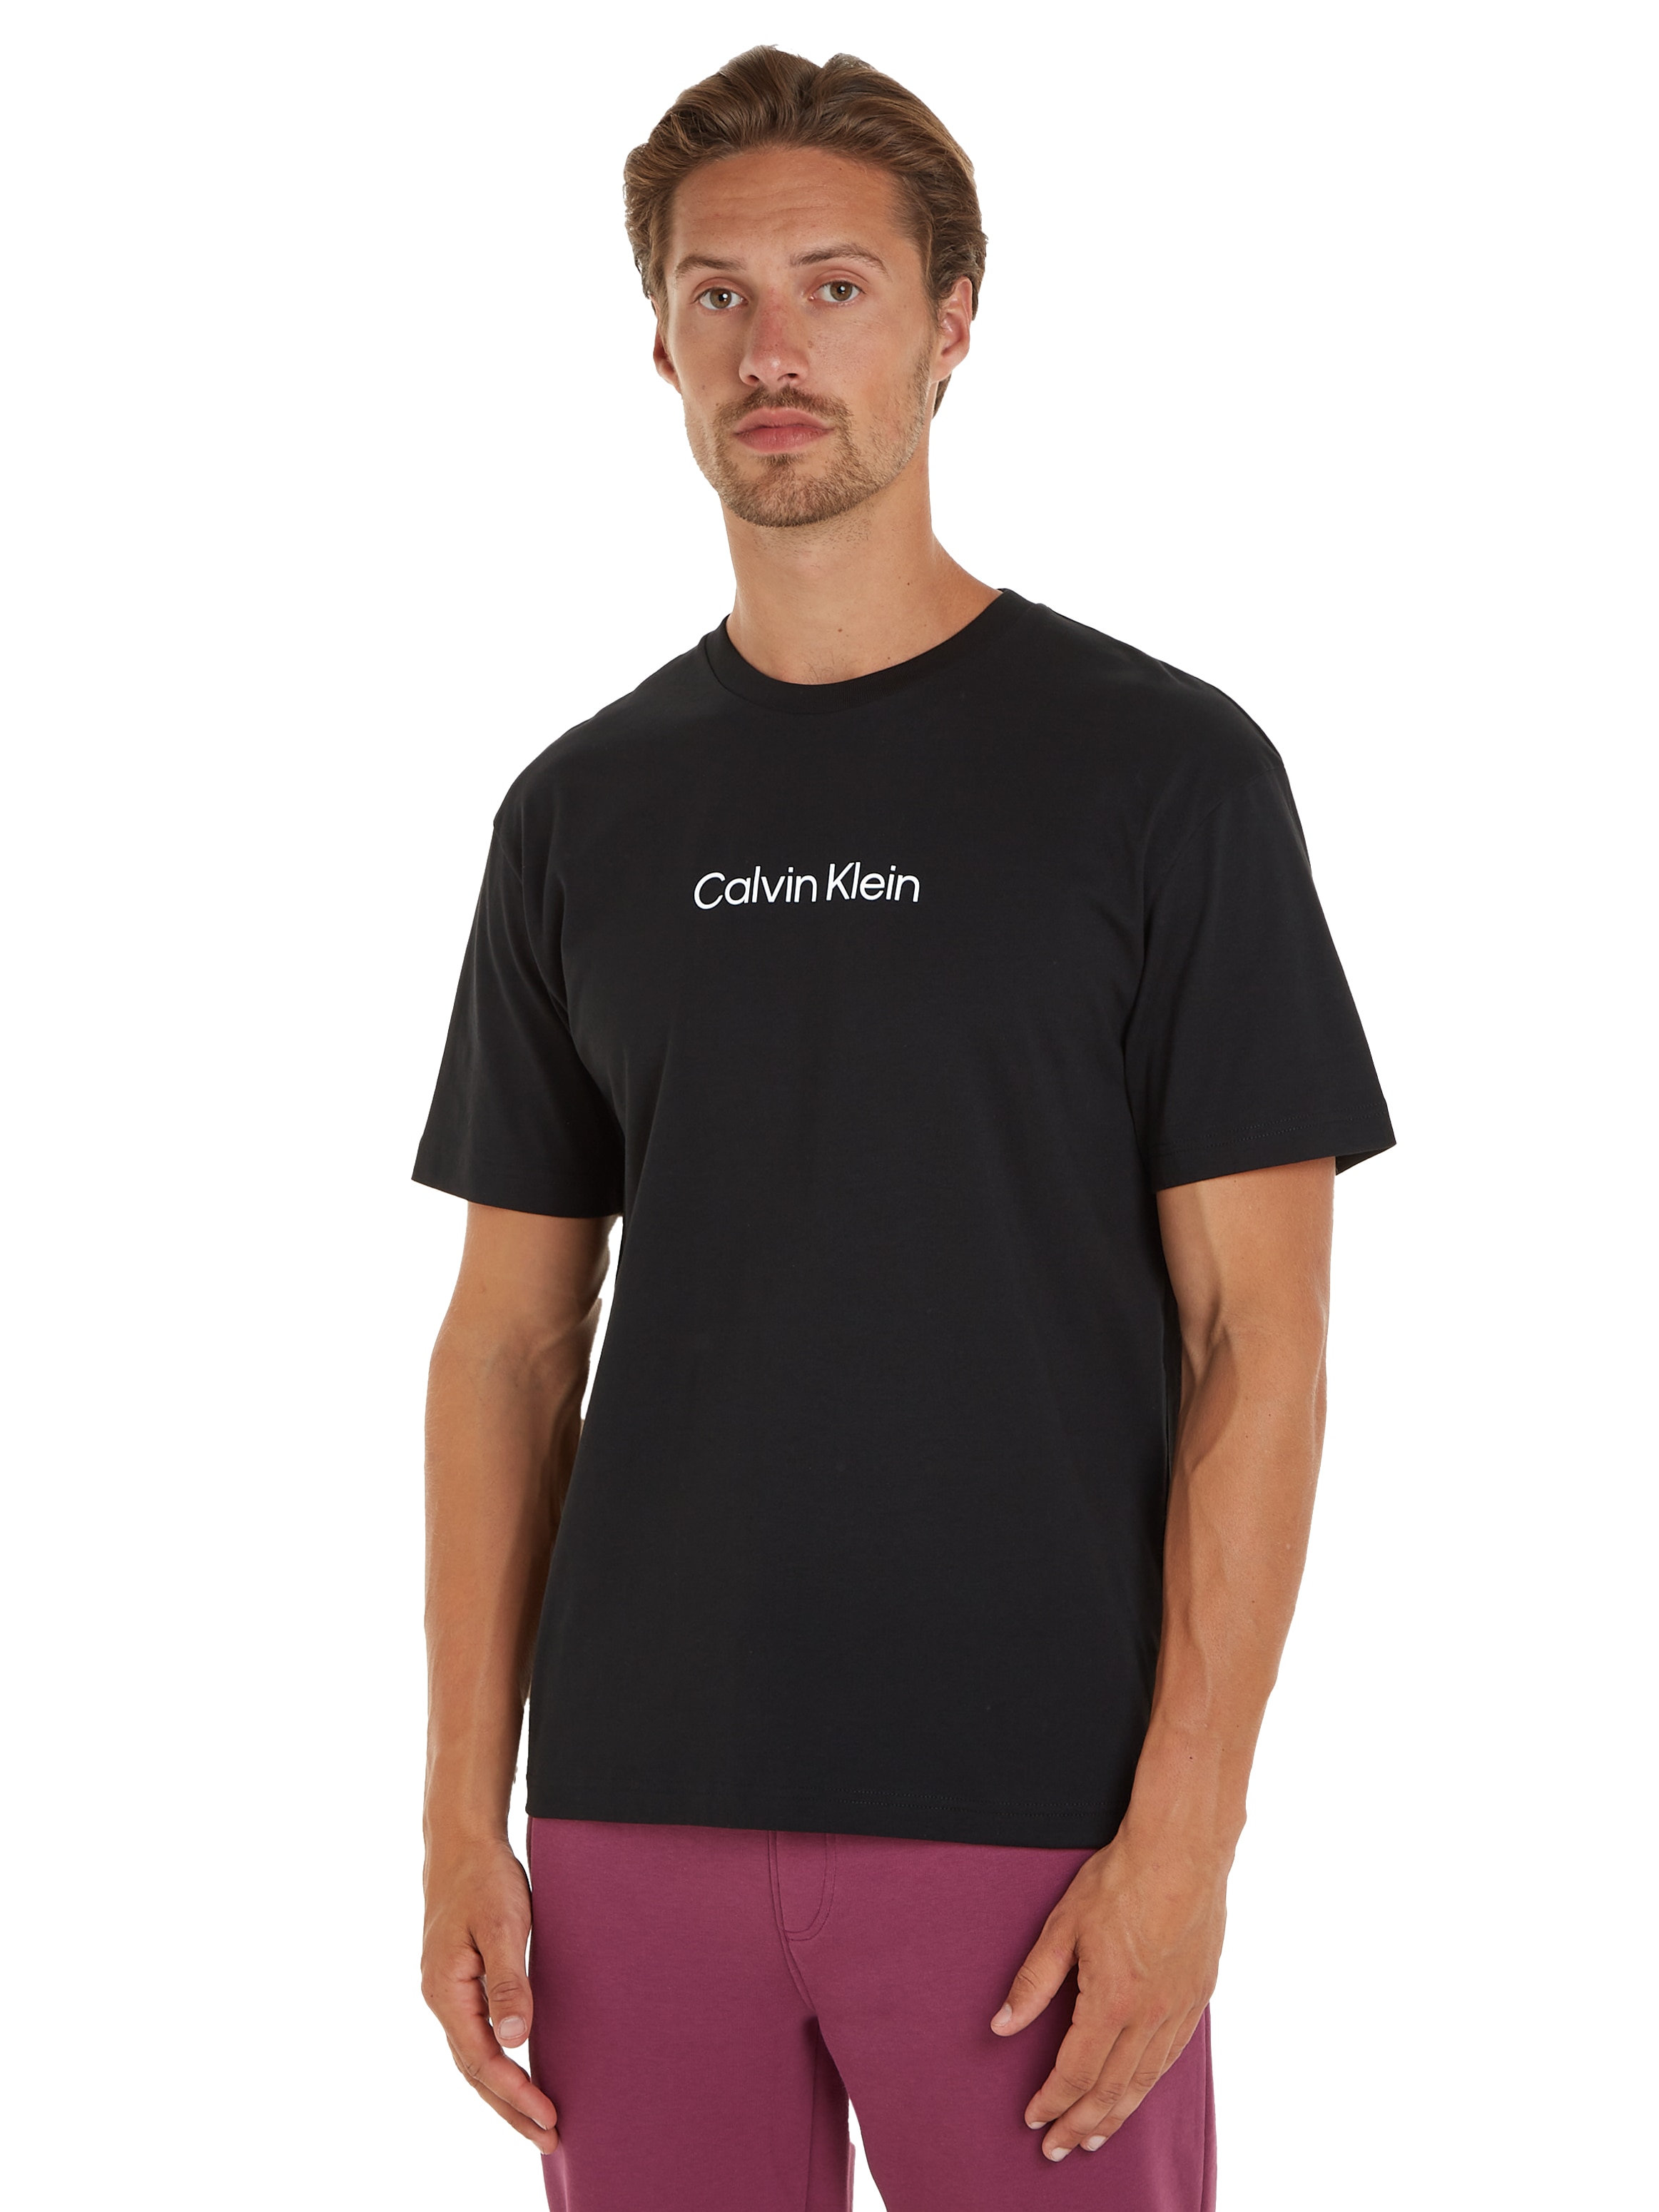 T-Shirt Calvin T-SHIRT«, bei COMFORT »HERO ♕ LOGO Markenlabel aufgedrucktem mit Klein